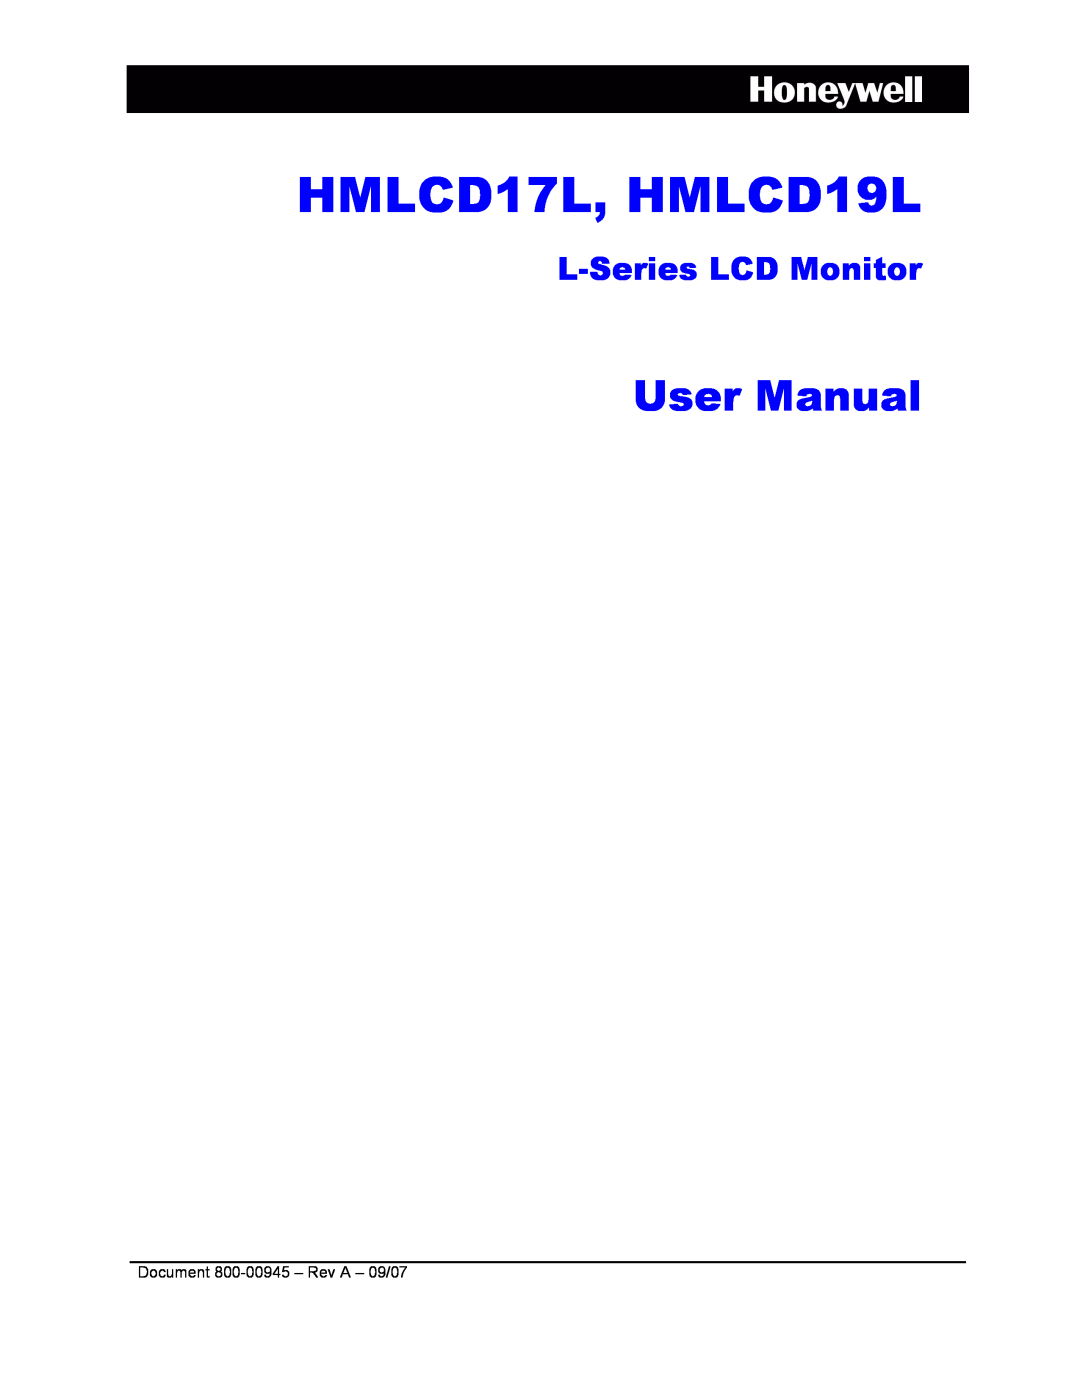 Honeywell user manual HMLCD17L, HMLCD19L, User Manual, L-Series LCD Monitor 